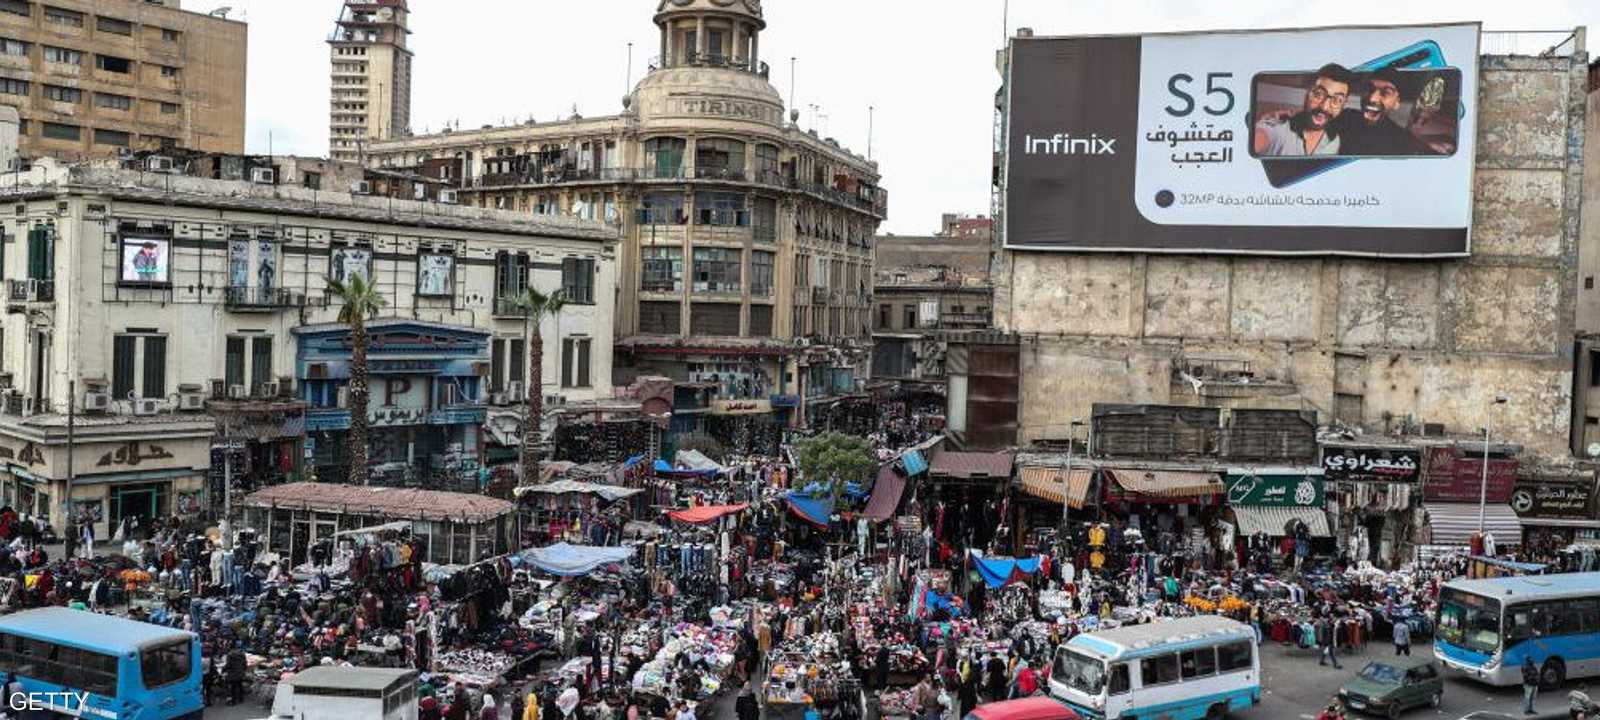 إحدى الأسواق الشعبية في القاهرة